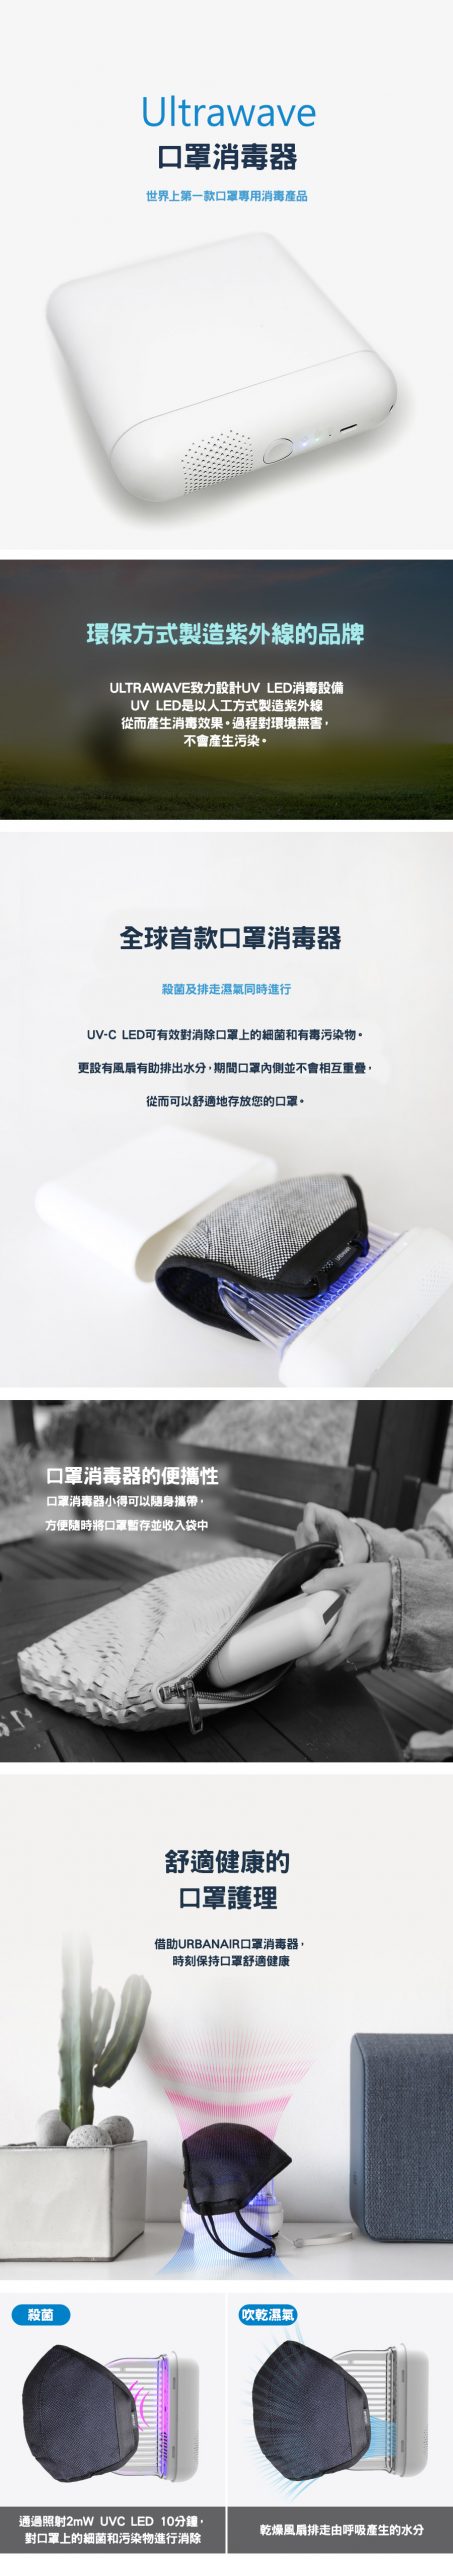 UV-C LED口罩消毒存放盒| 韓國URBANAIR 12